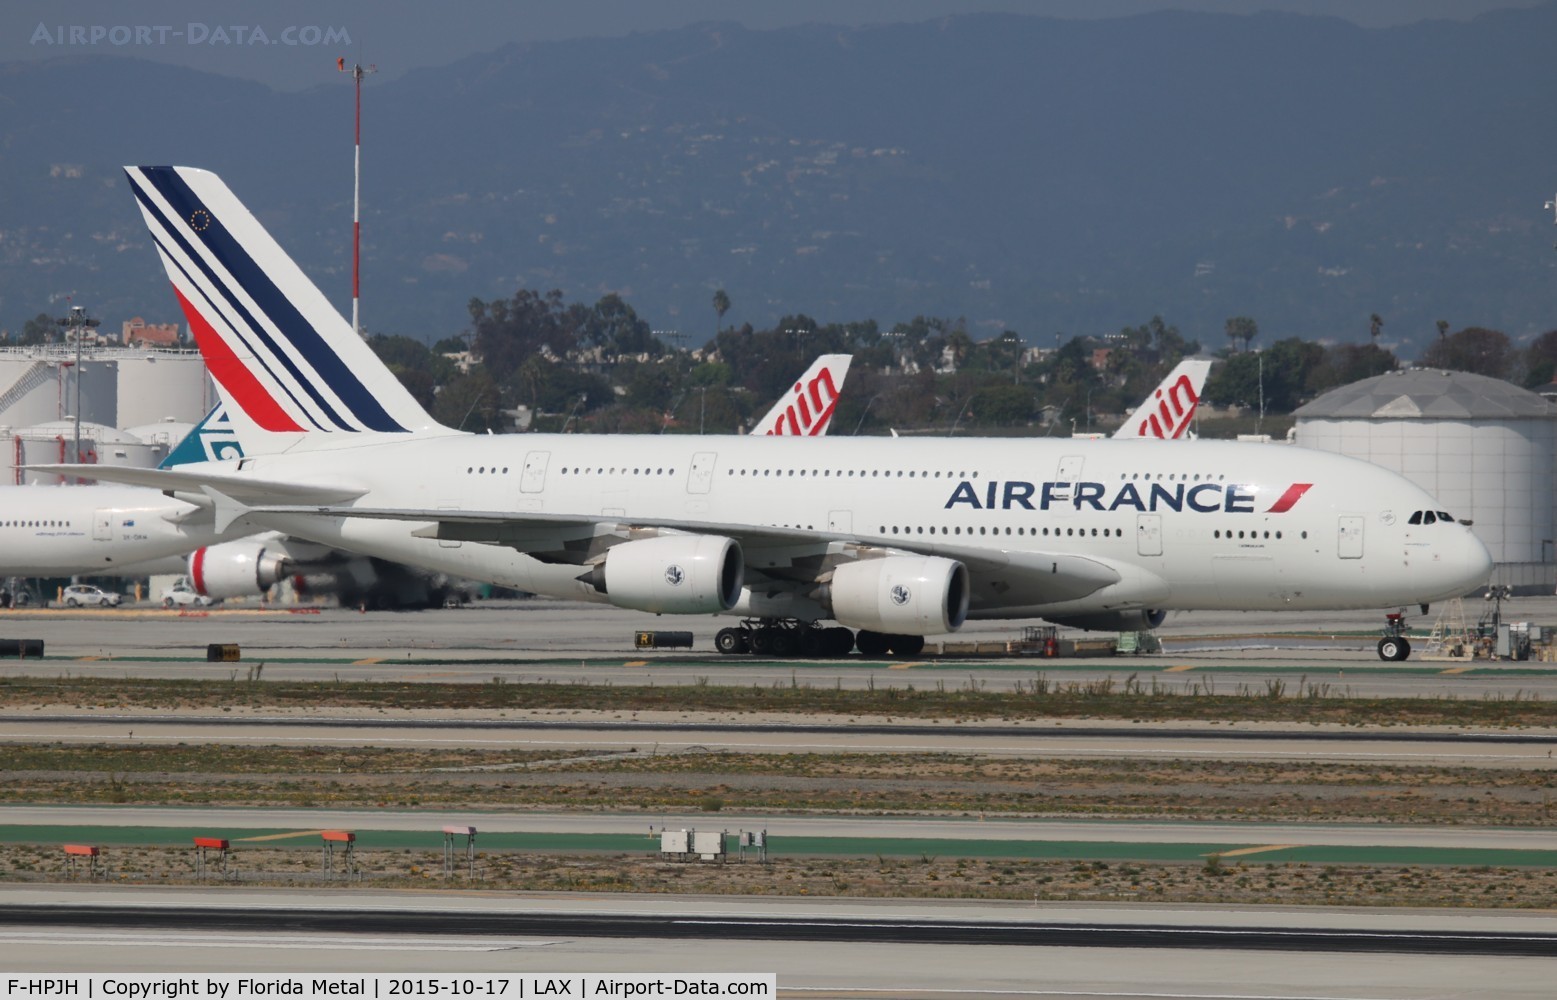 F-HPJH, 2011 Airbus A380-861 C/N 099, Air France